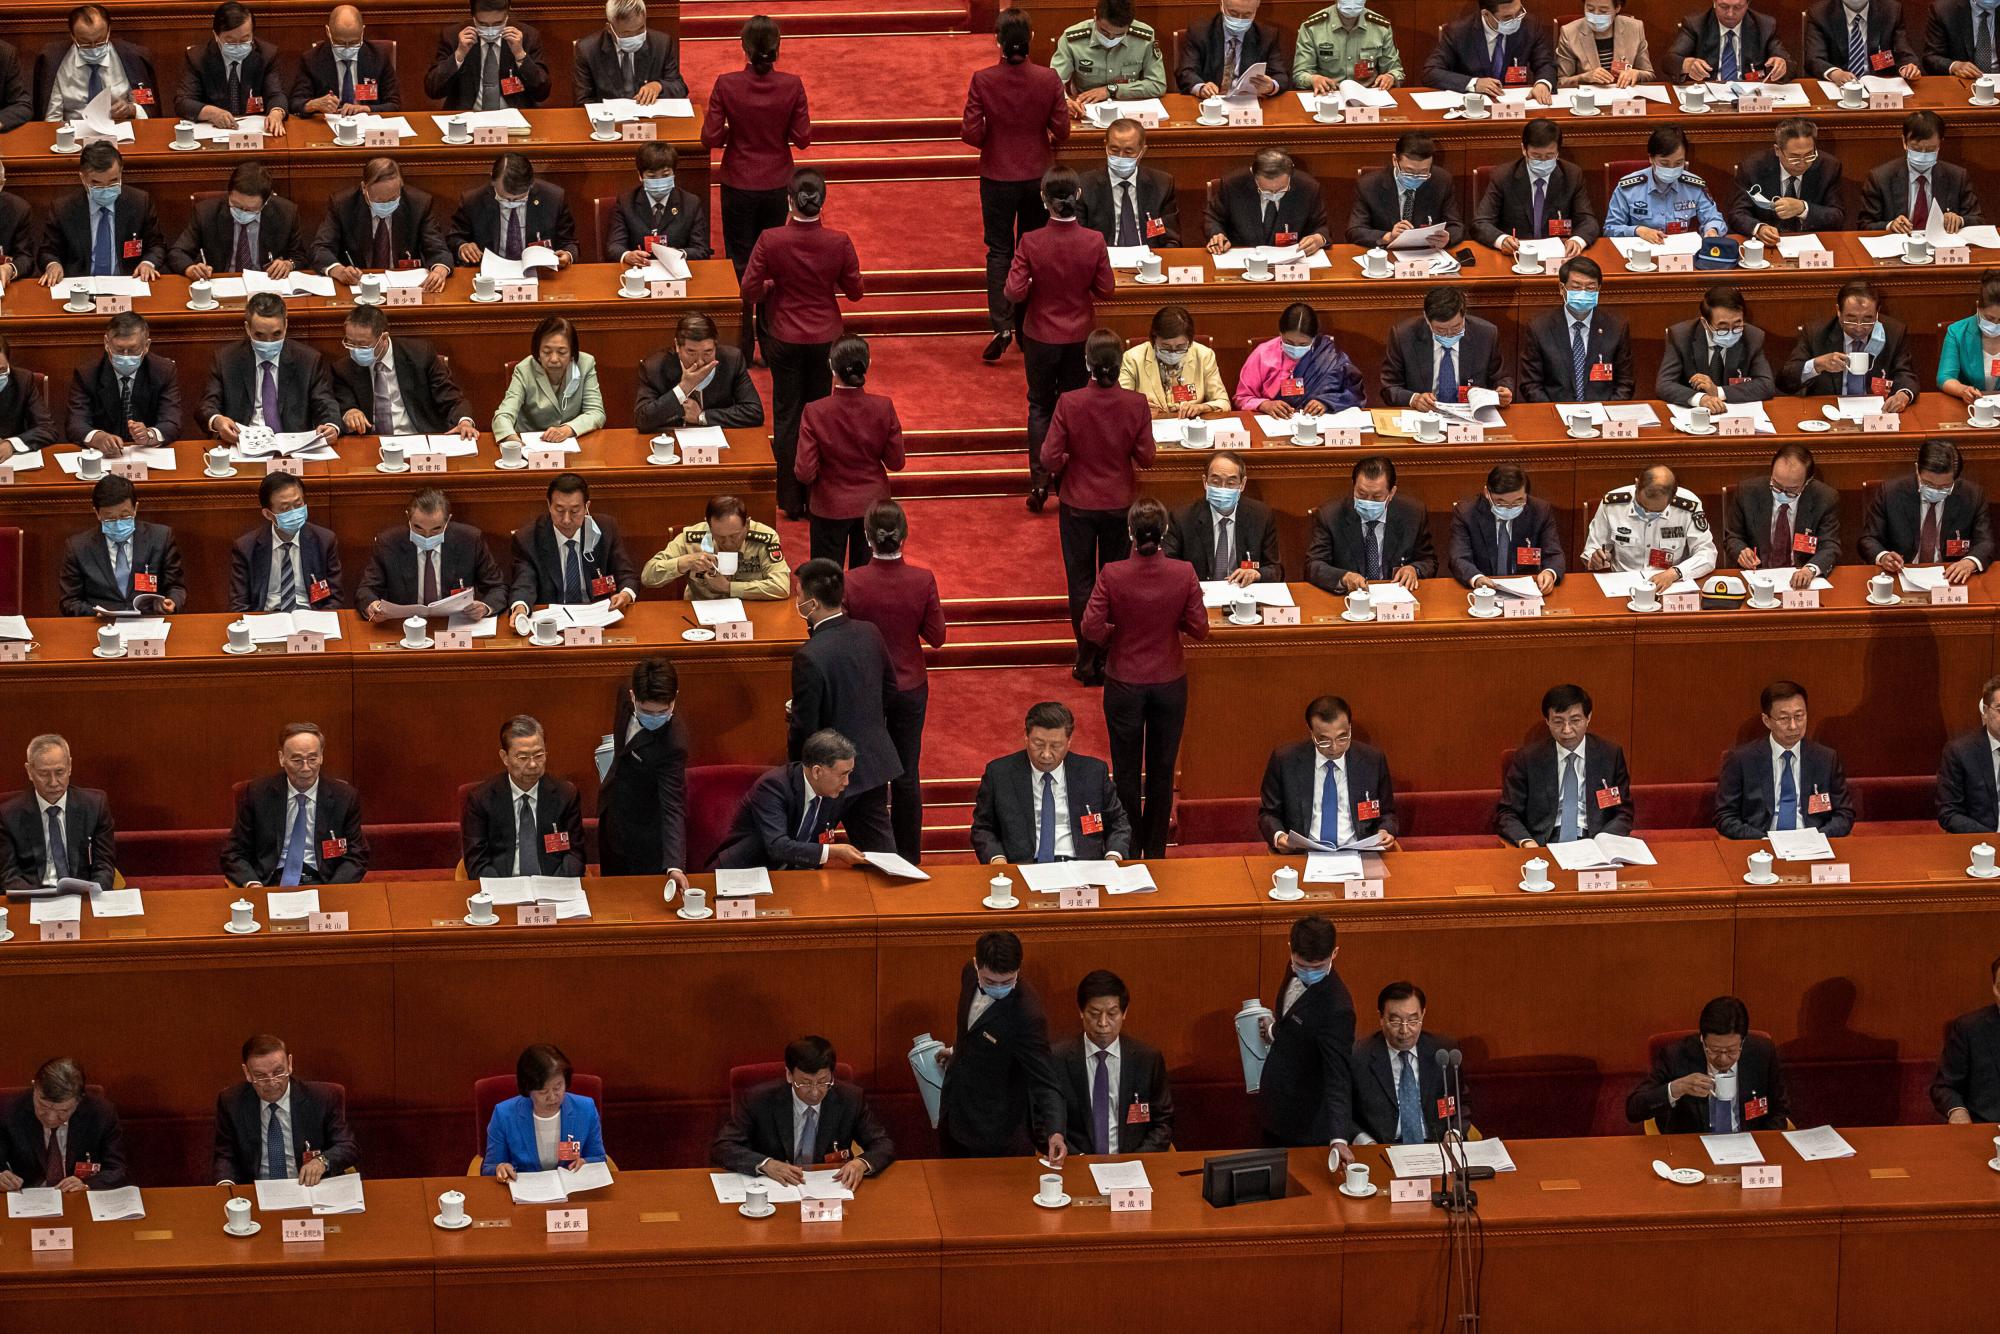 El presidente chino, Xi Jinping, centro, y el primer ministro Li Keqiang, centro derecha, junto con otros delegados, asisten a la segunda sesión plenaria del Congreso Nacional del Pueblo de China (APN) en el Gran Salón del Pueblo en Beijing, el lunes 25 de mayo de 2020. (Romano Foto de Pilipey / Pool a través de AP)